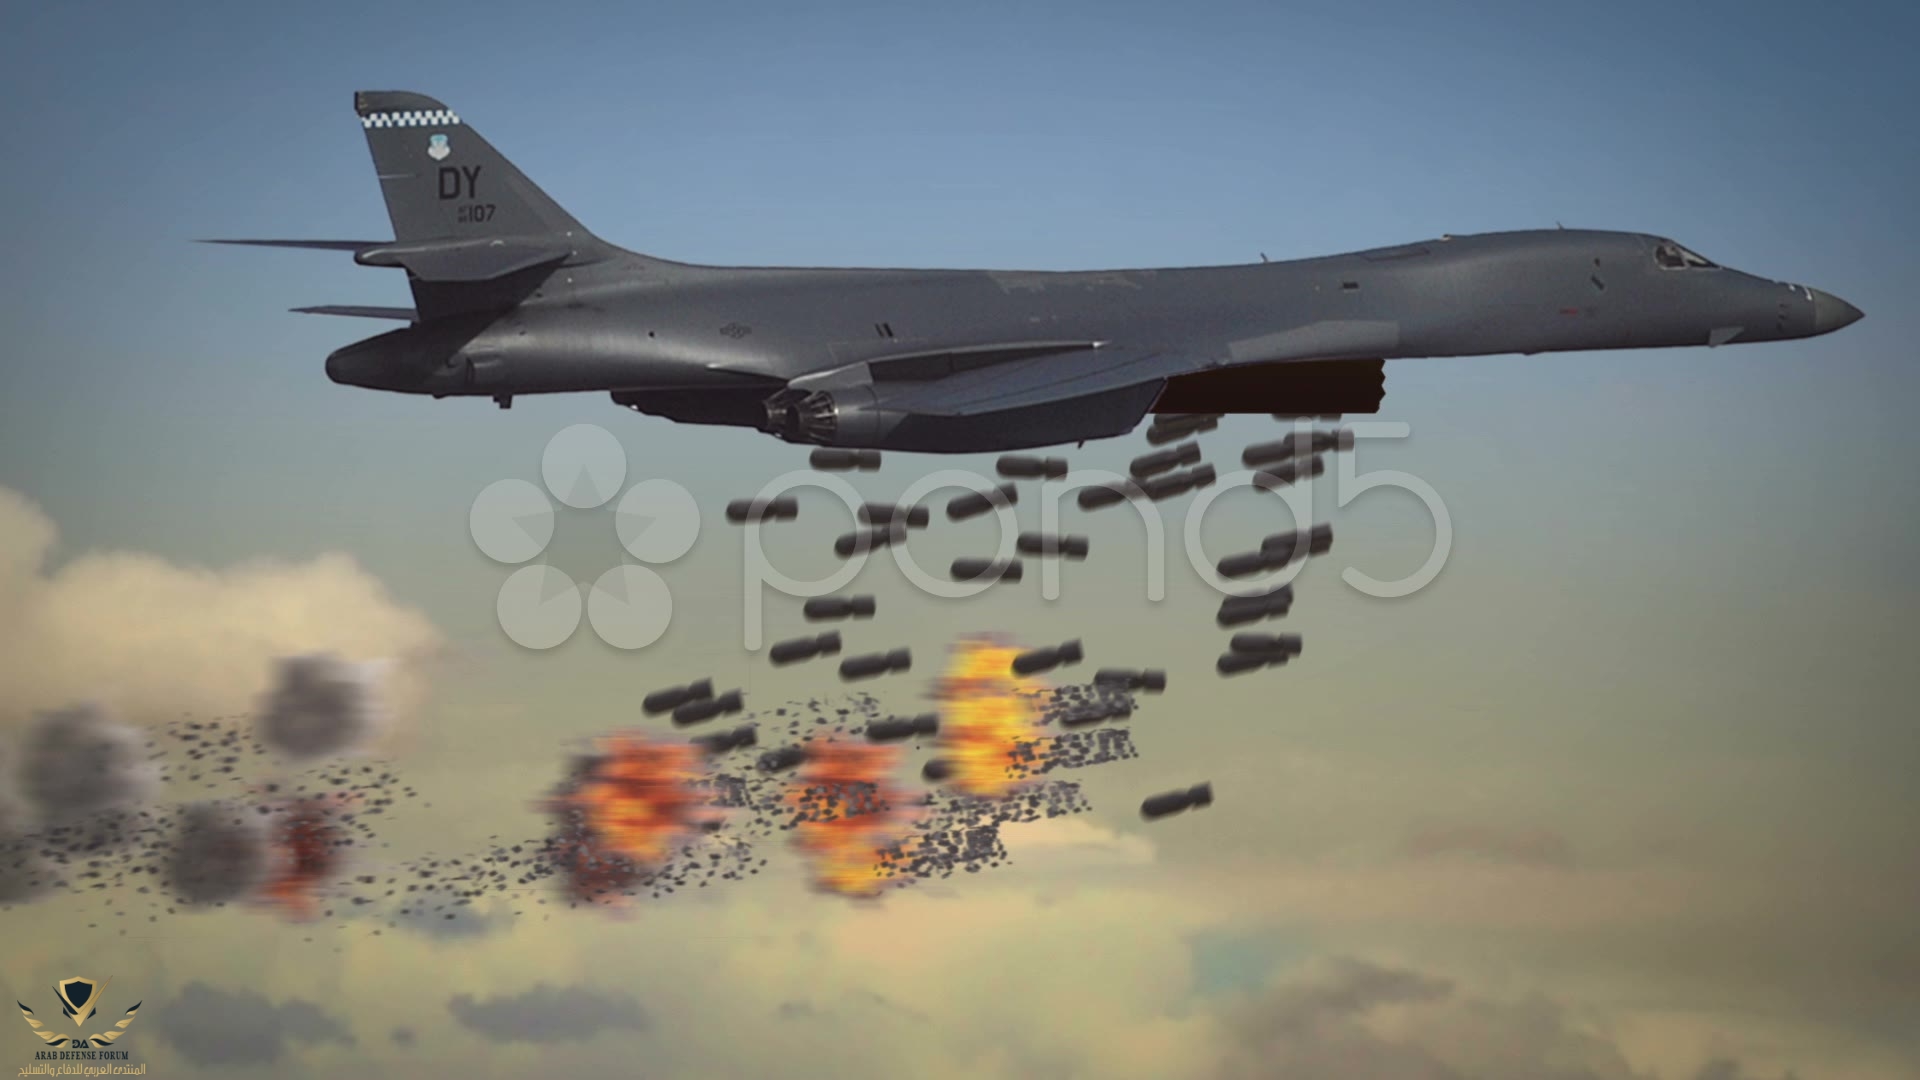 b1-bomber-cluster-bomb-attack-footage-020159606_prevstill.jpeg